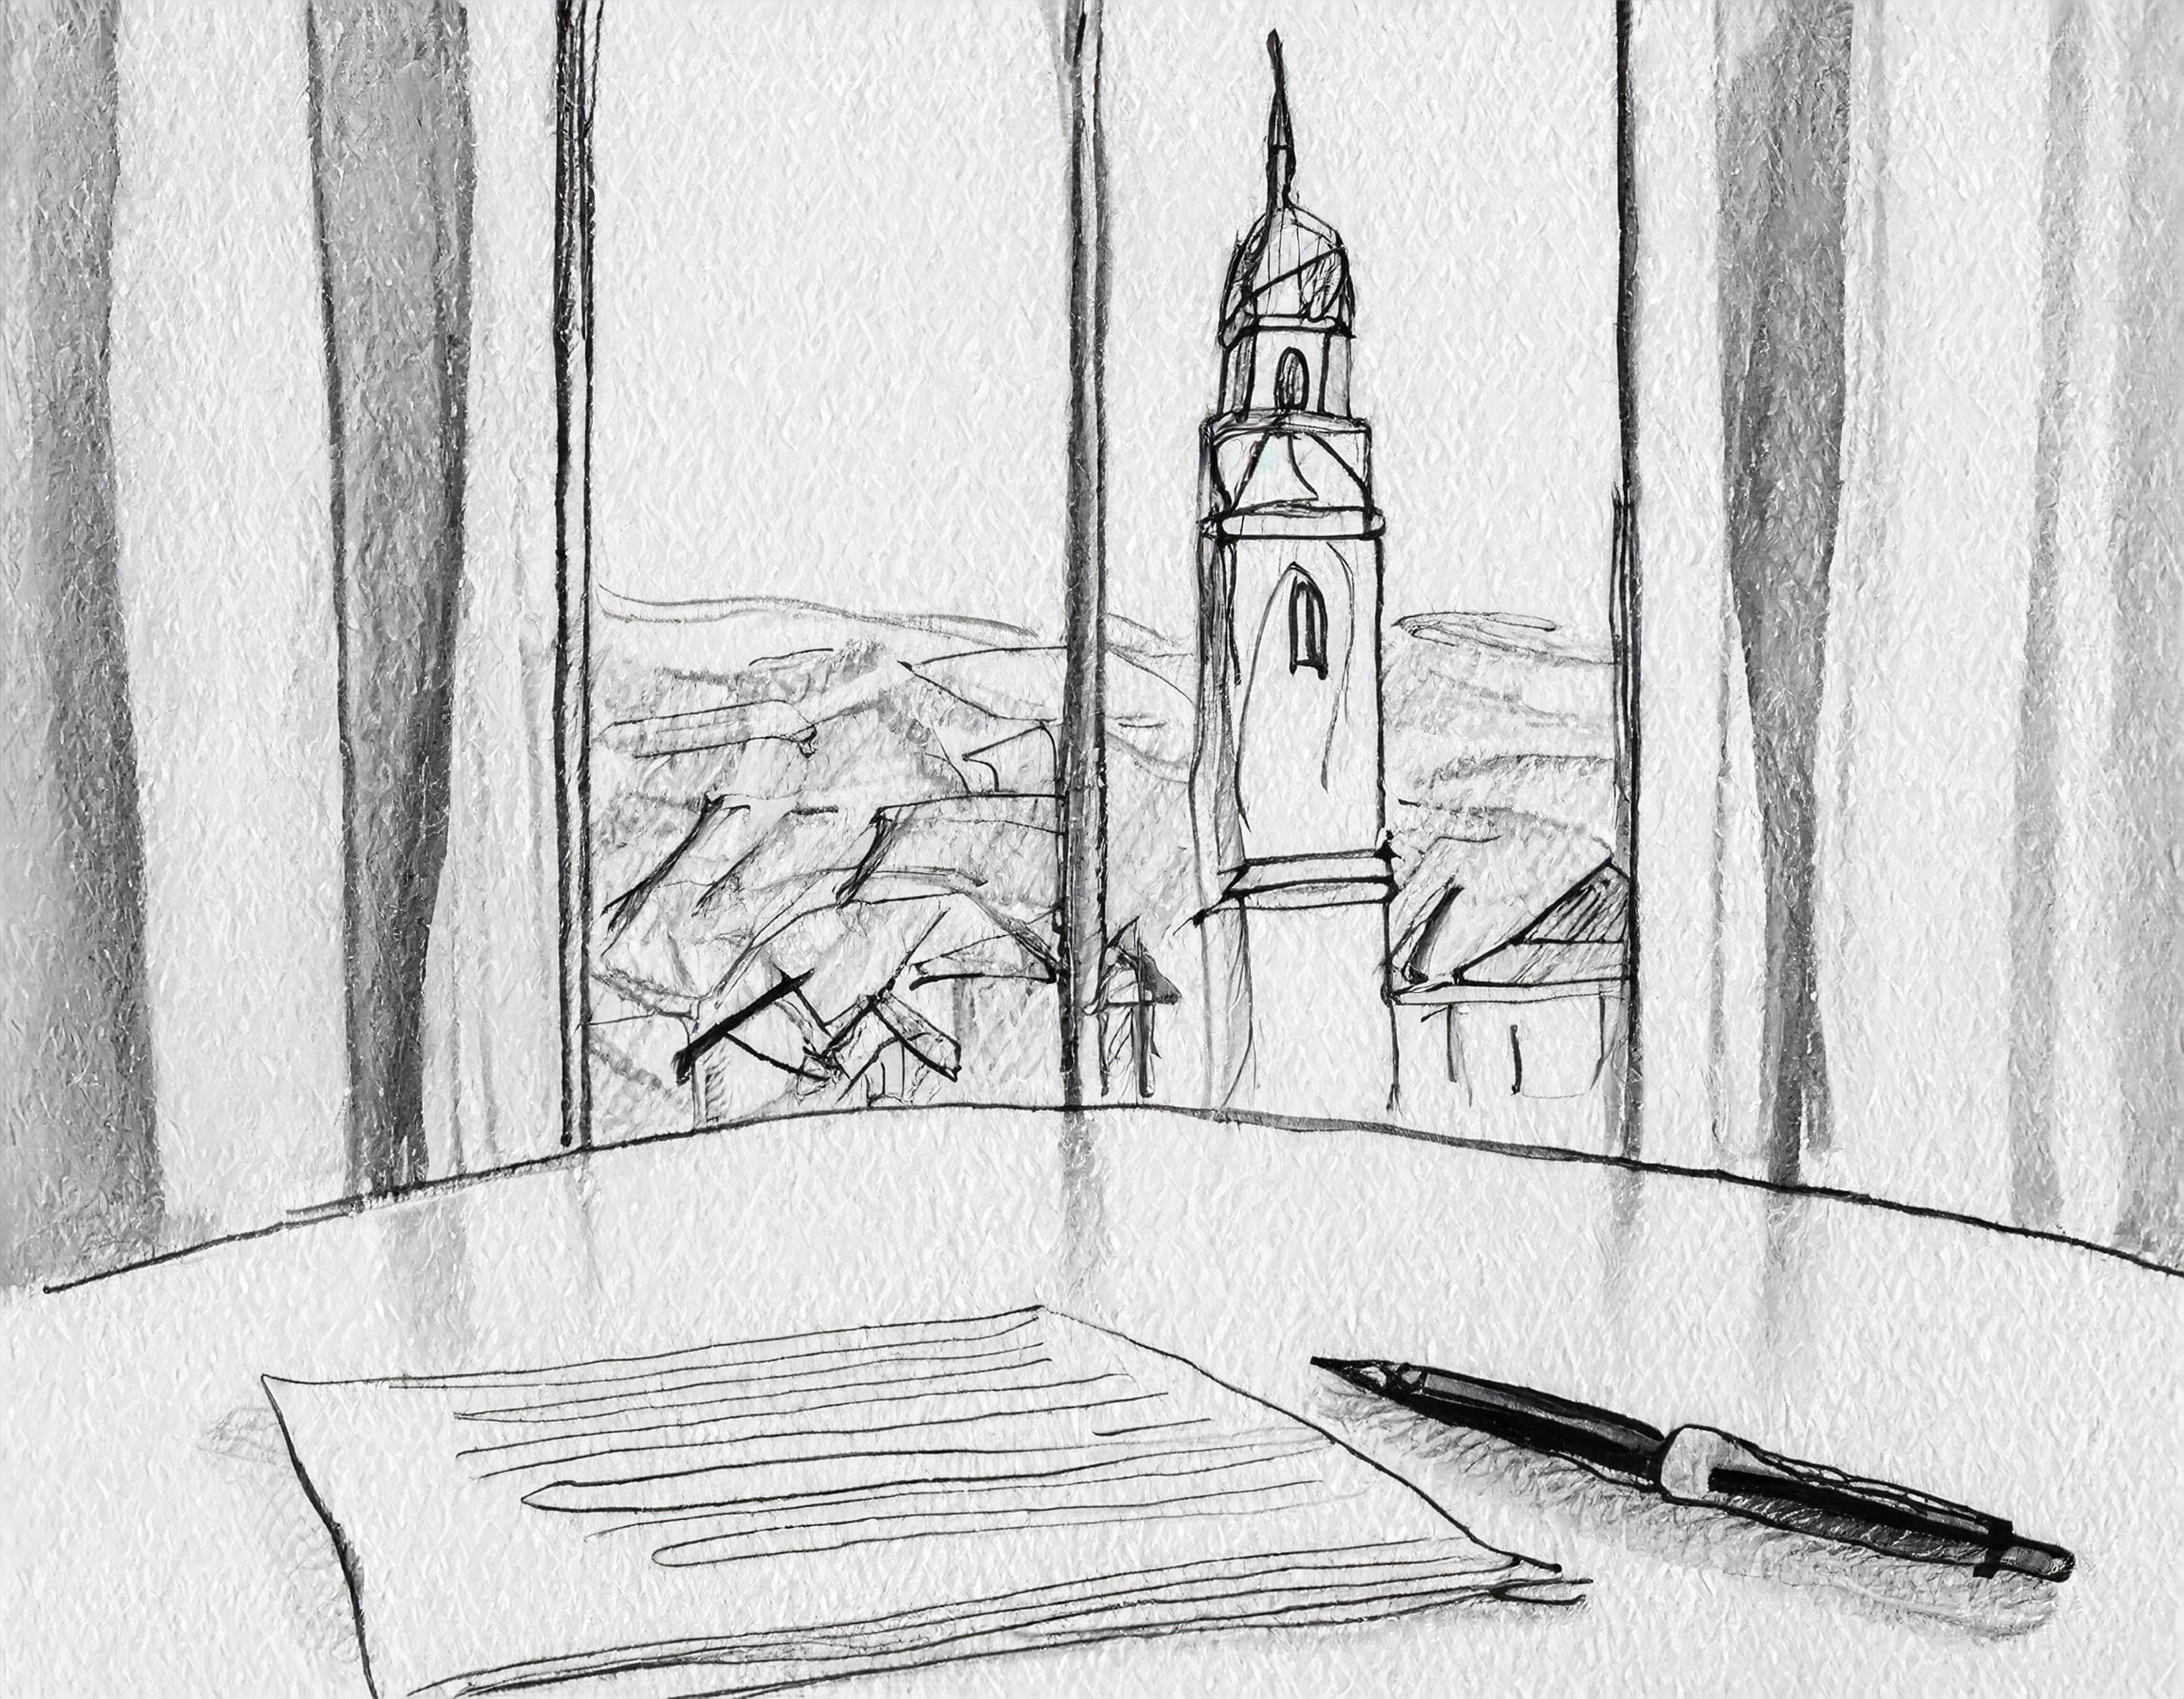 bilde av en bunke papirer på et bord, utsikt ut av vinduet til et tårn